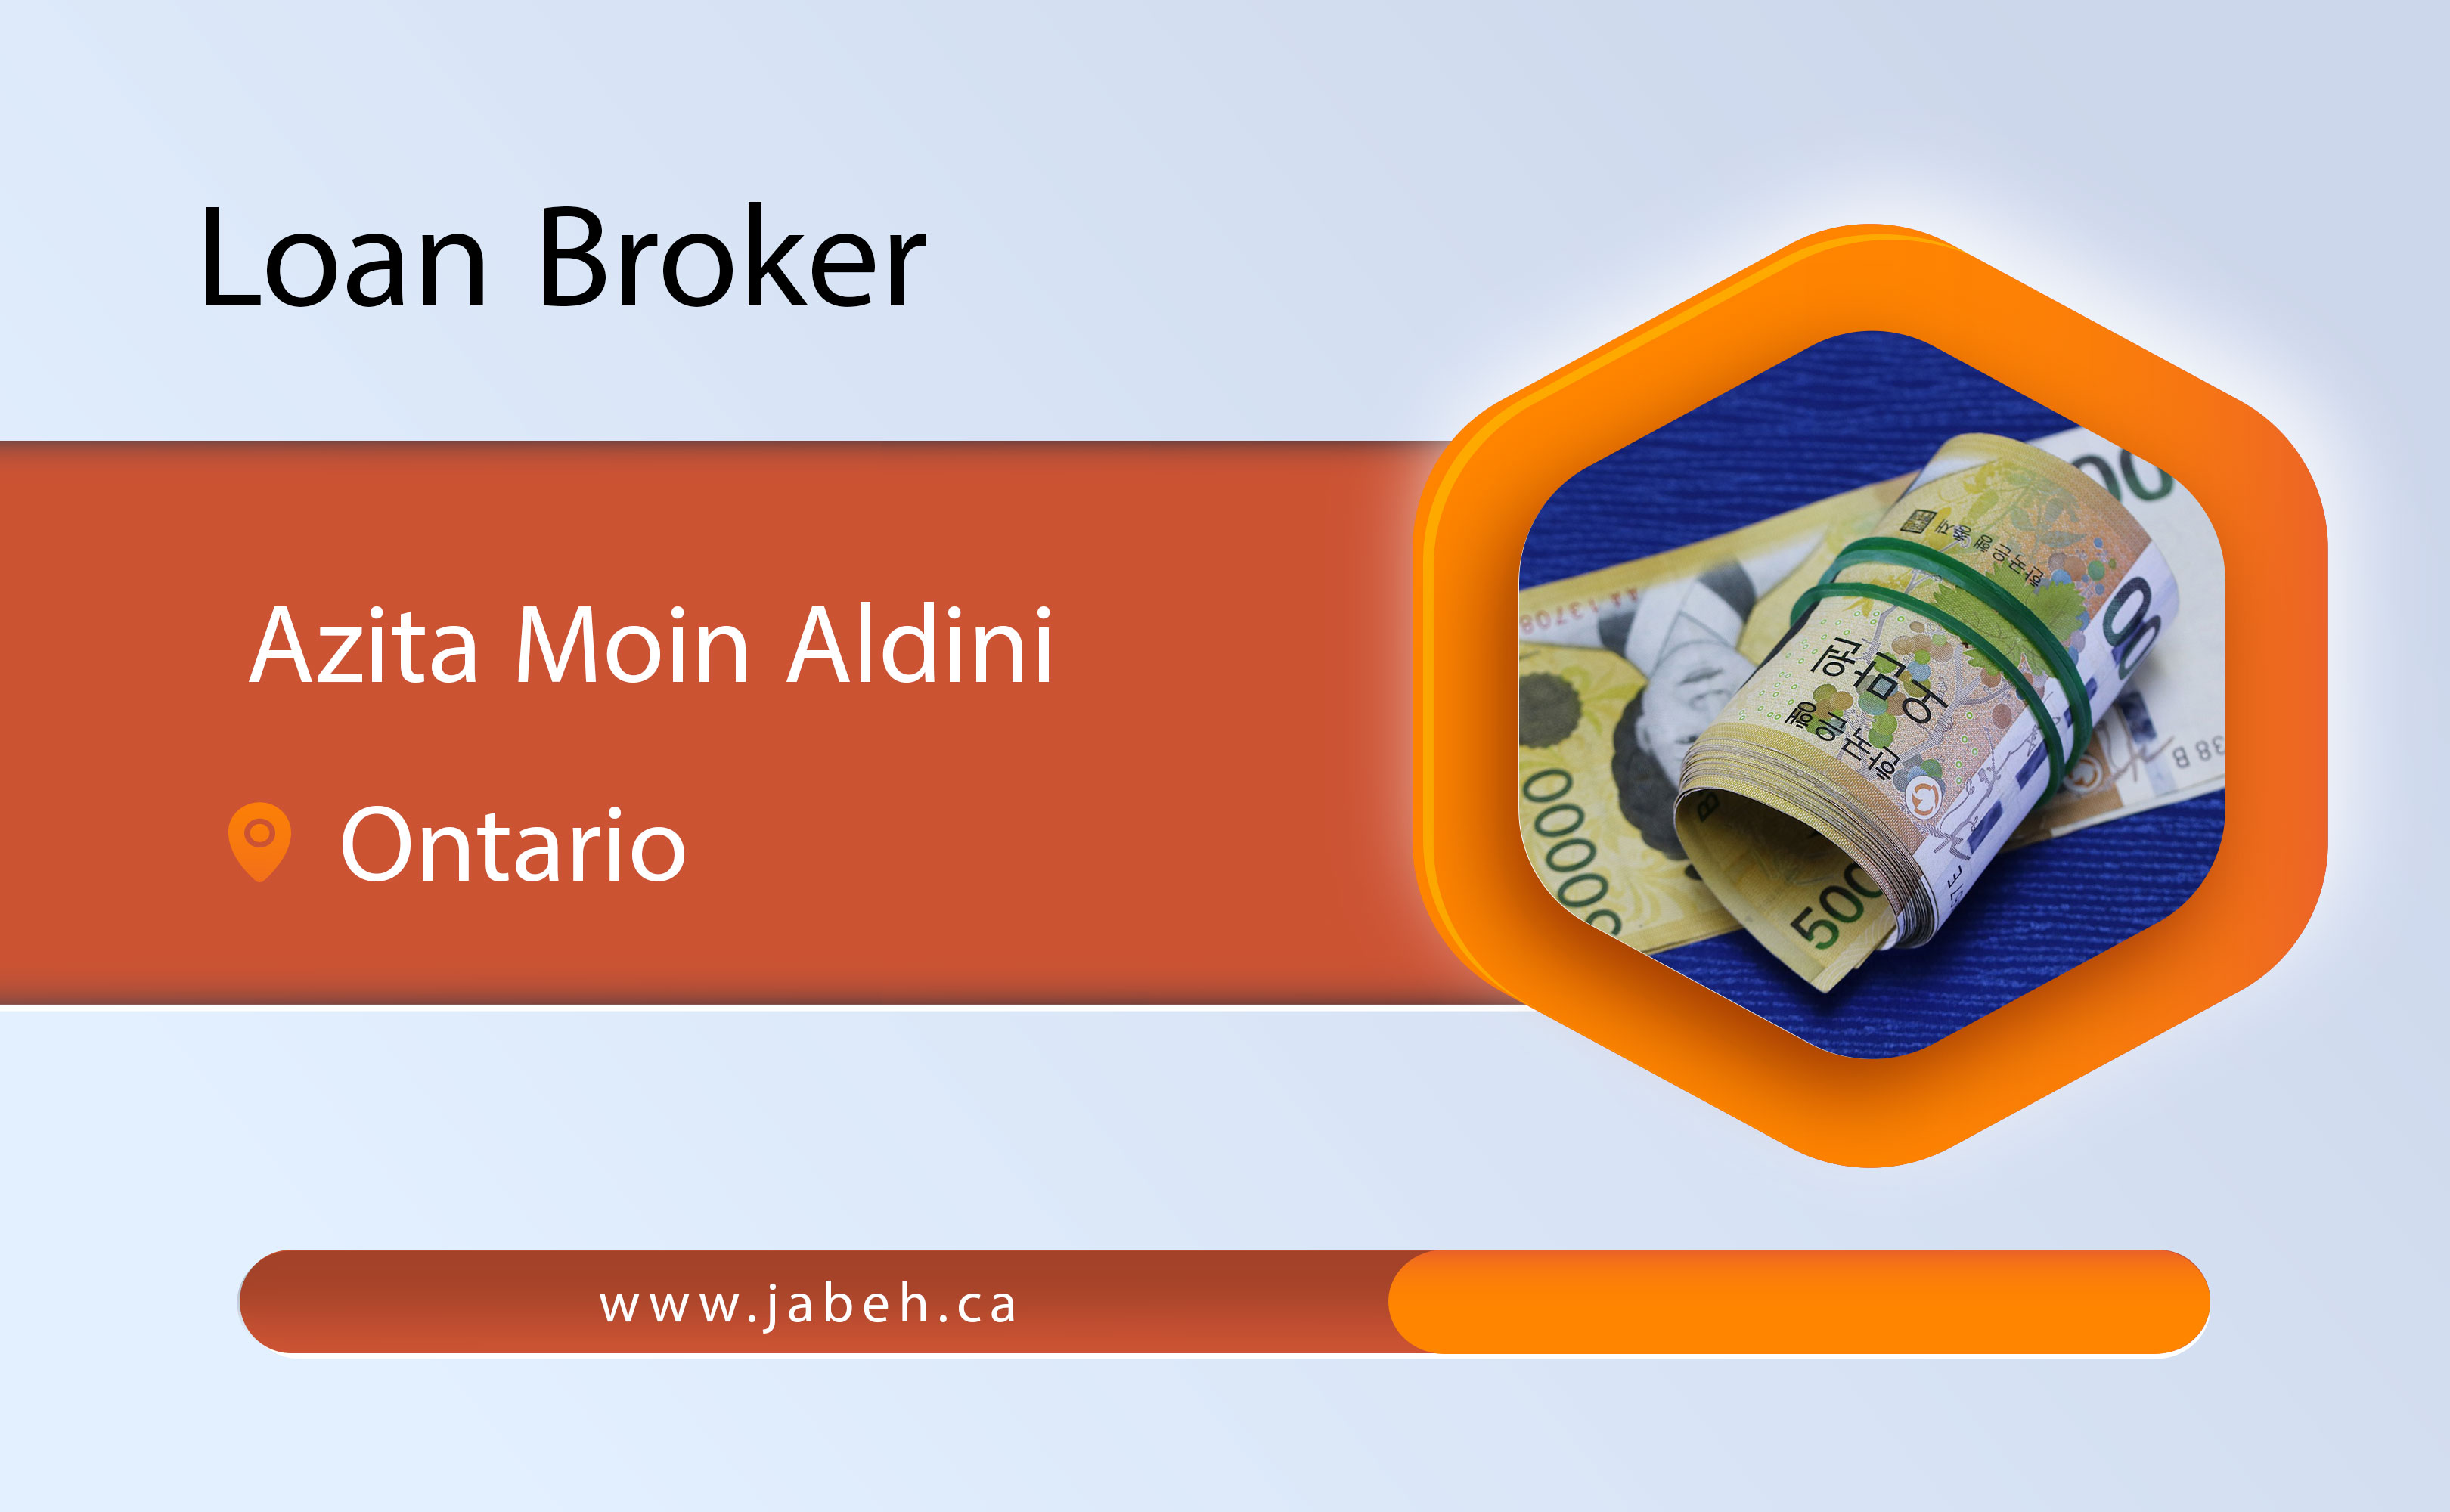 Iranian loan broker Azita Moin Aldini in Ontario